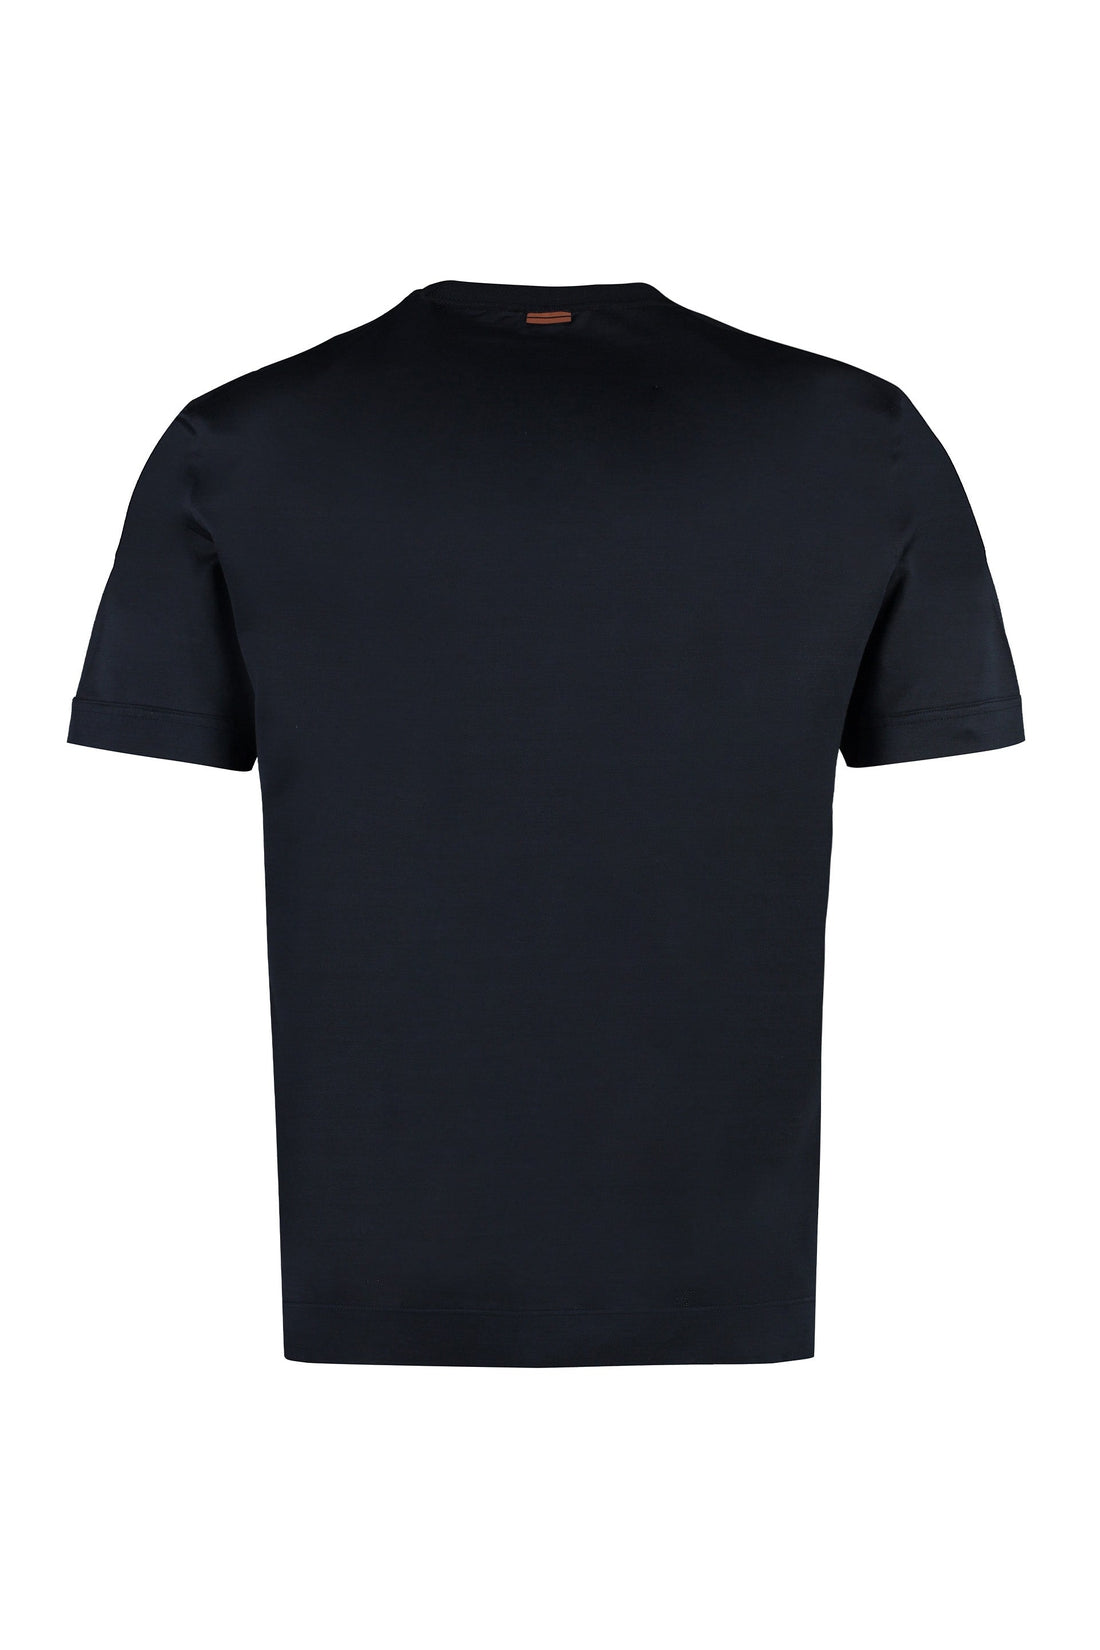 Zegna-OUTLET-SALE-Cotton and silk crew-neck T-shirt-ARCHIVIST